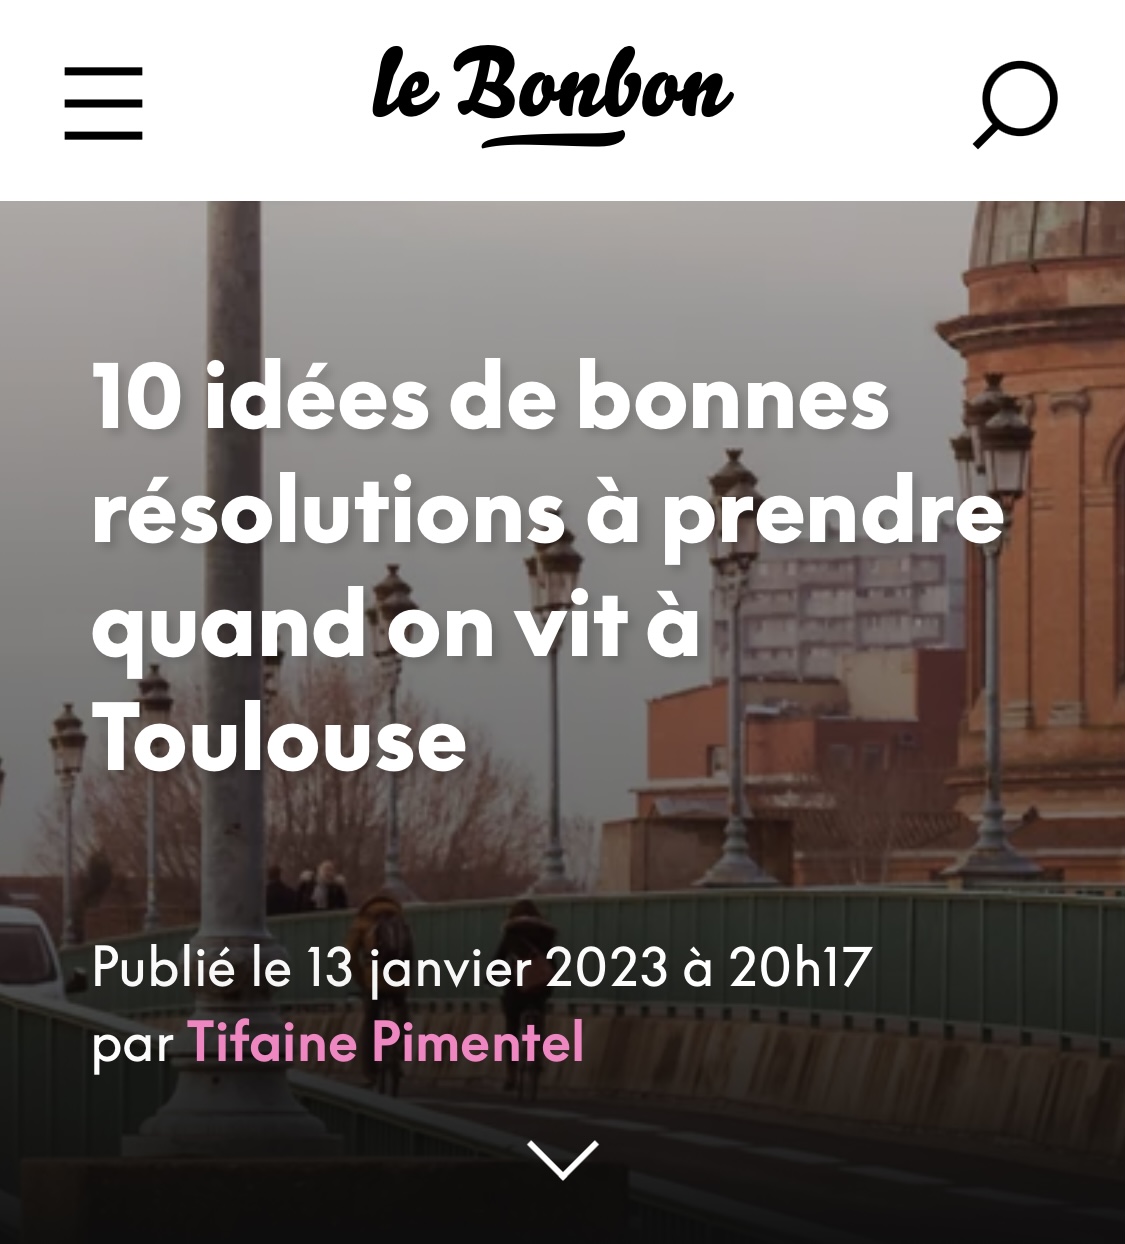 10 idées de bonnes résolutions à prendre quand on vit à Toulouse